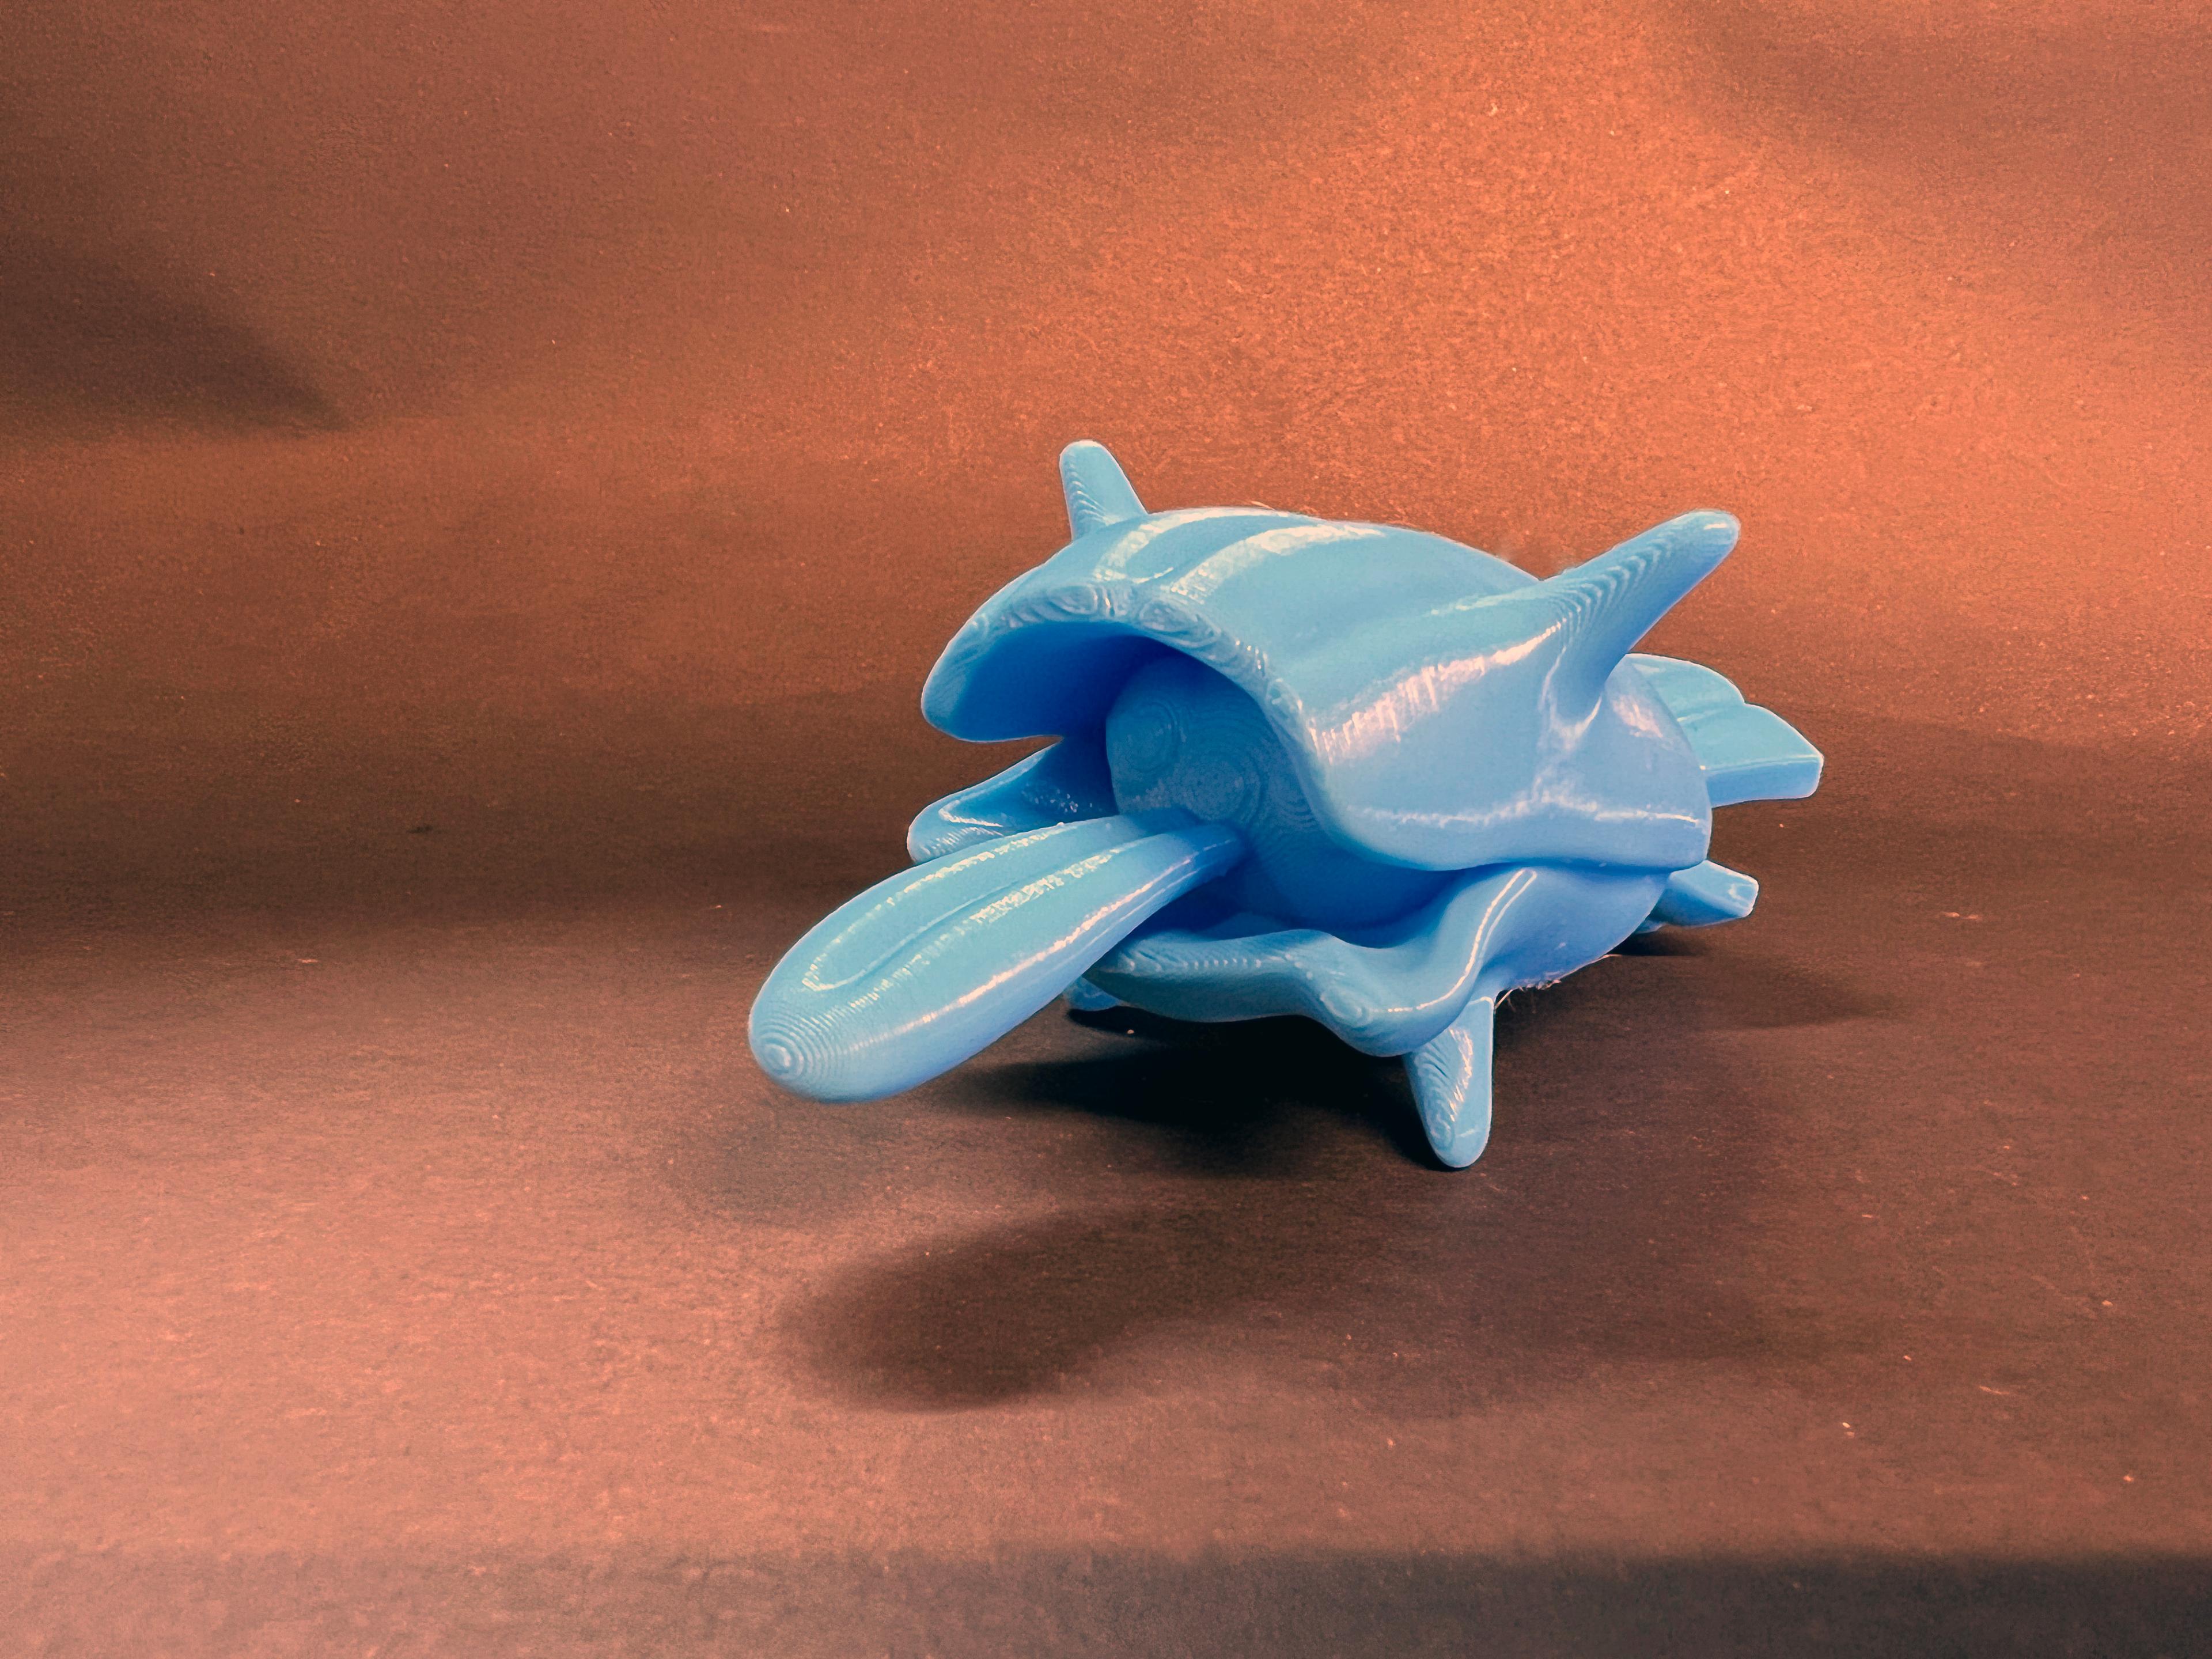 Shellder (Pokemon) 3d model